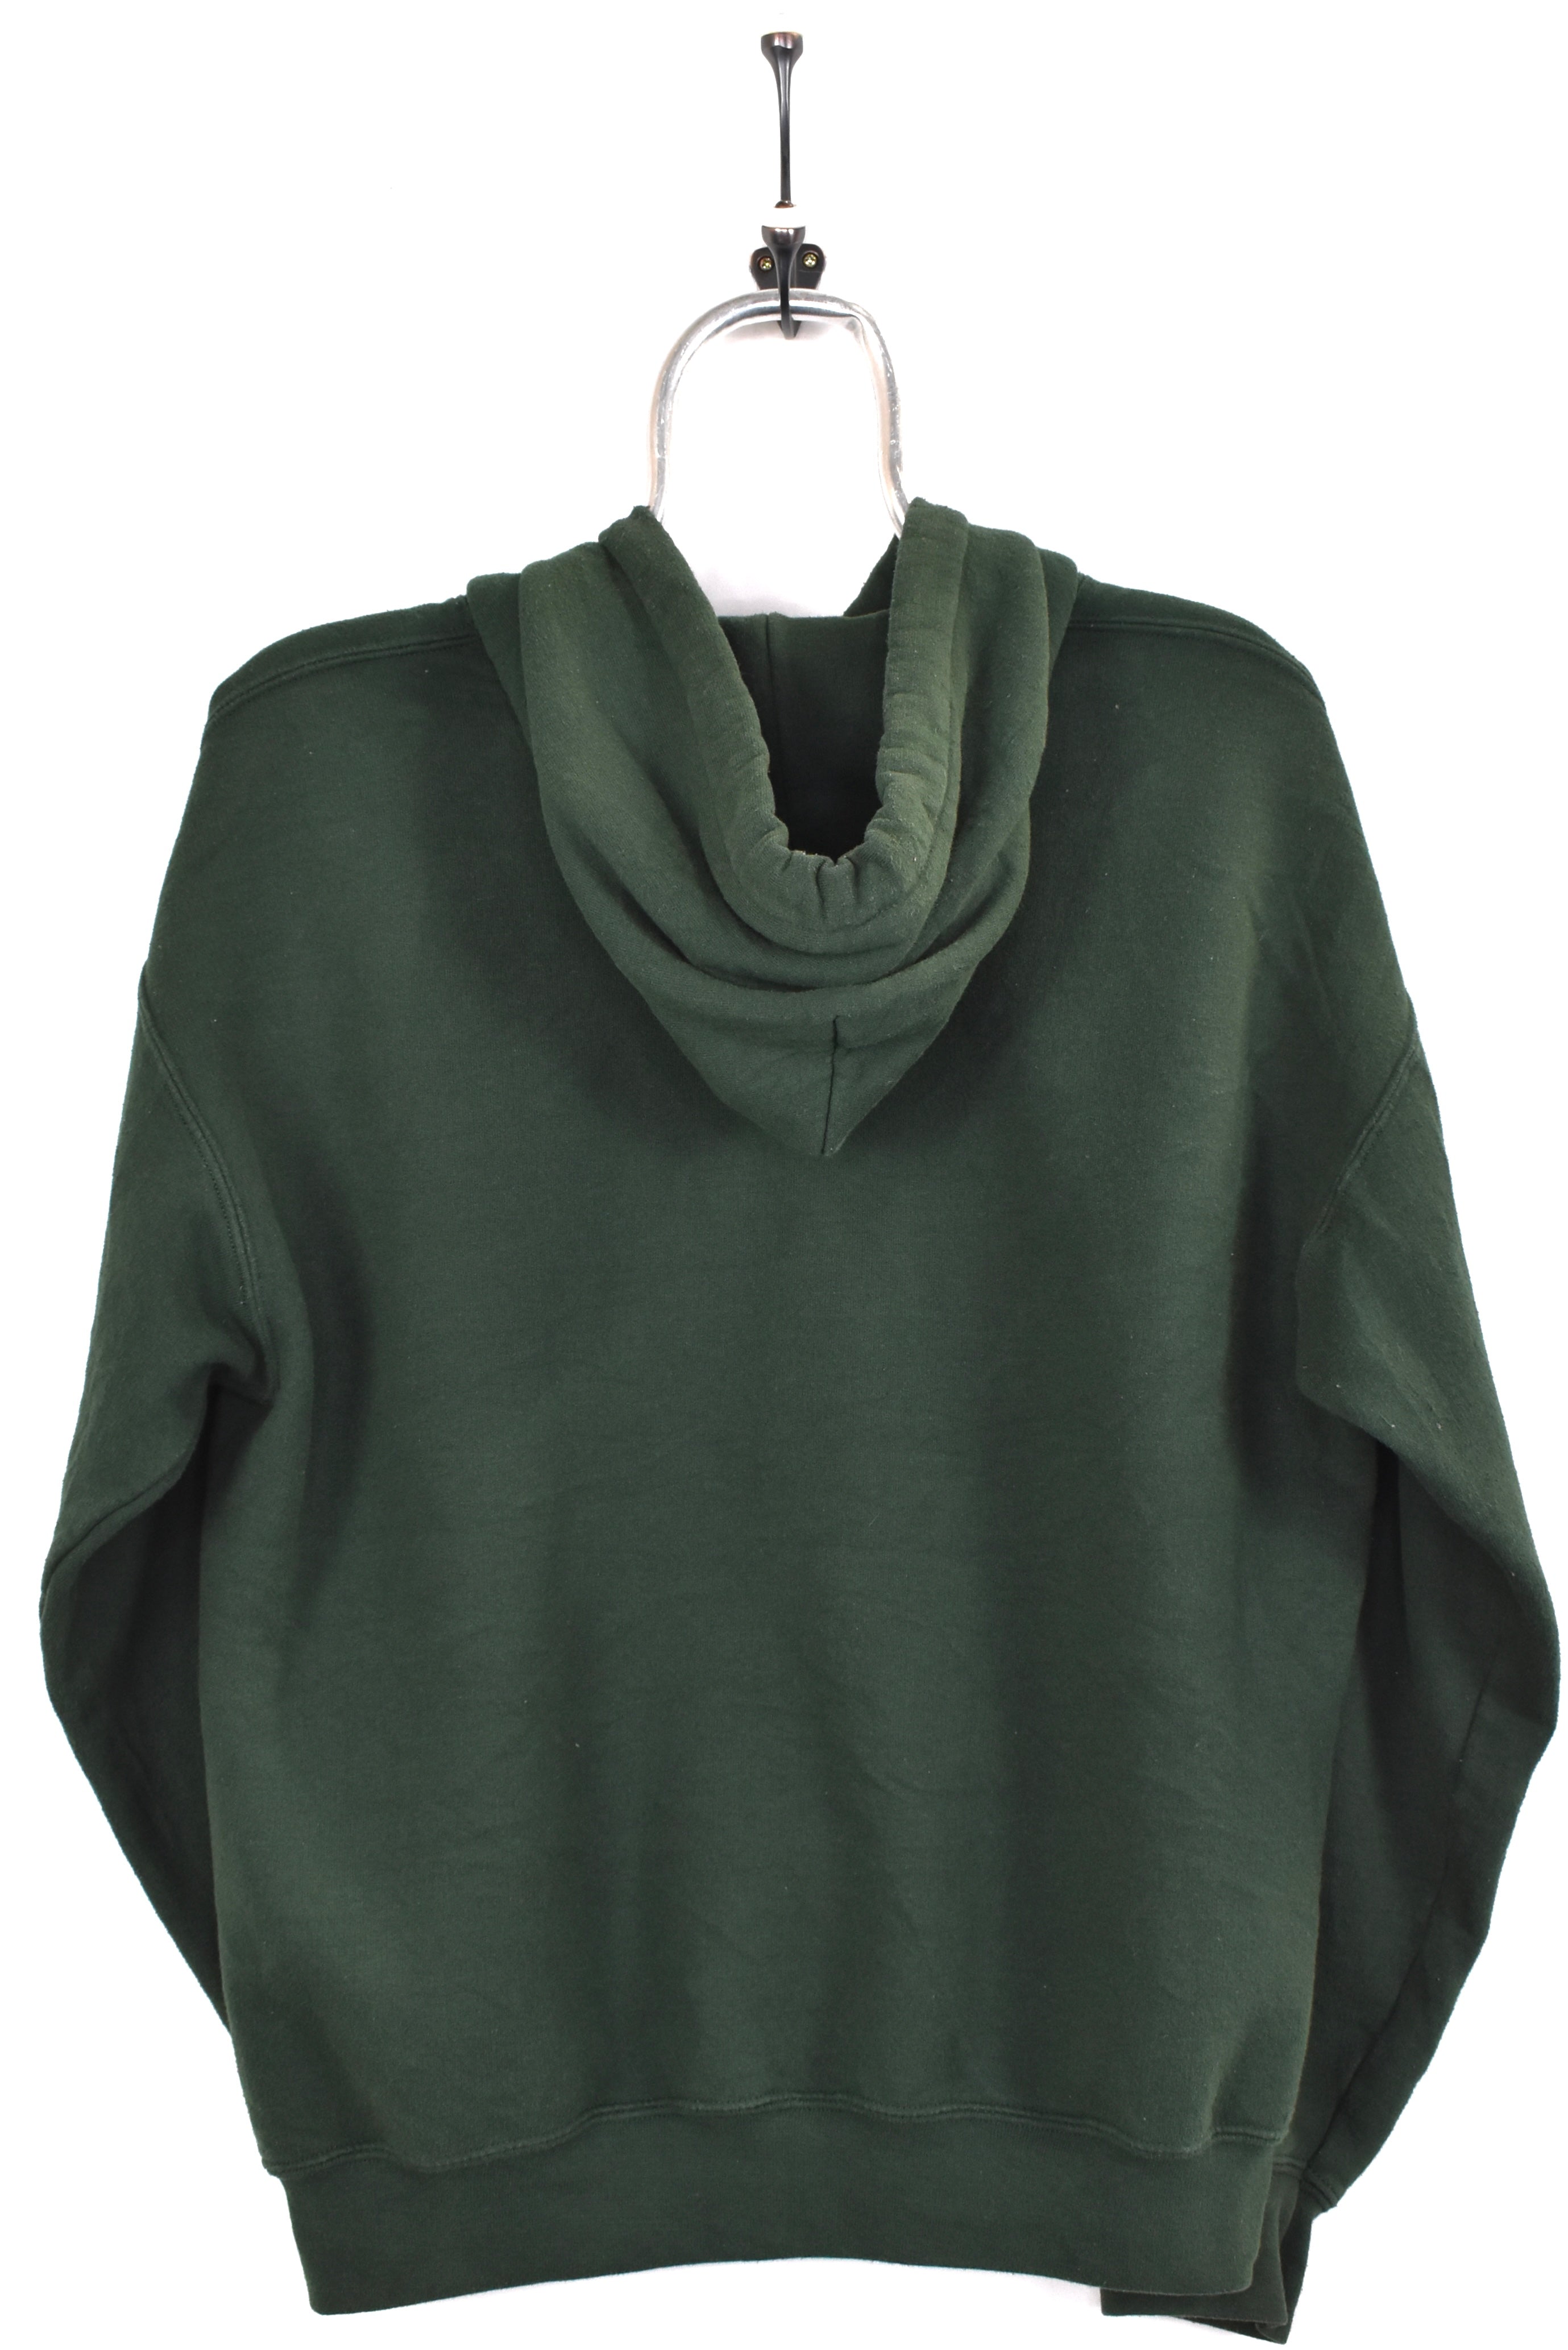 Vintage Green Bay Packers hoodie, NFL green embroidered sweatshirt - AU Medium PRO SPORT